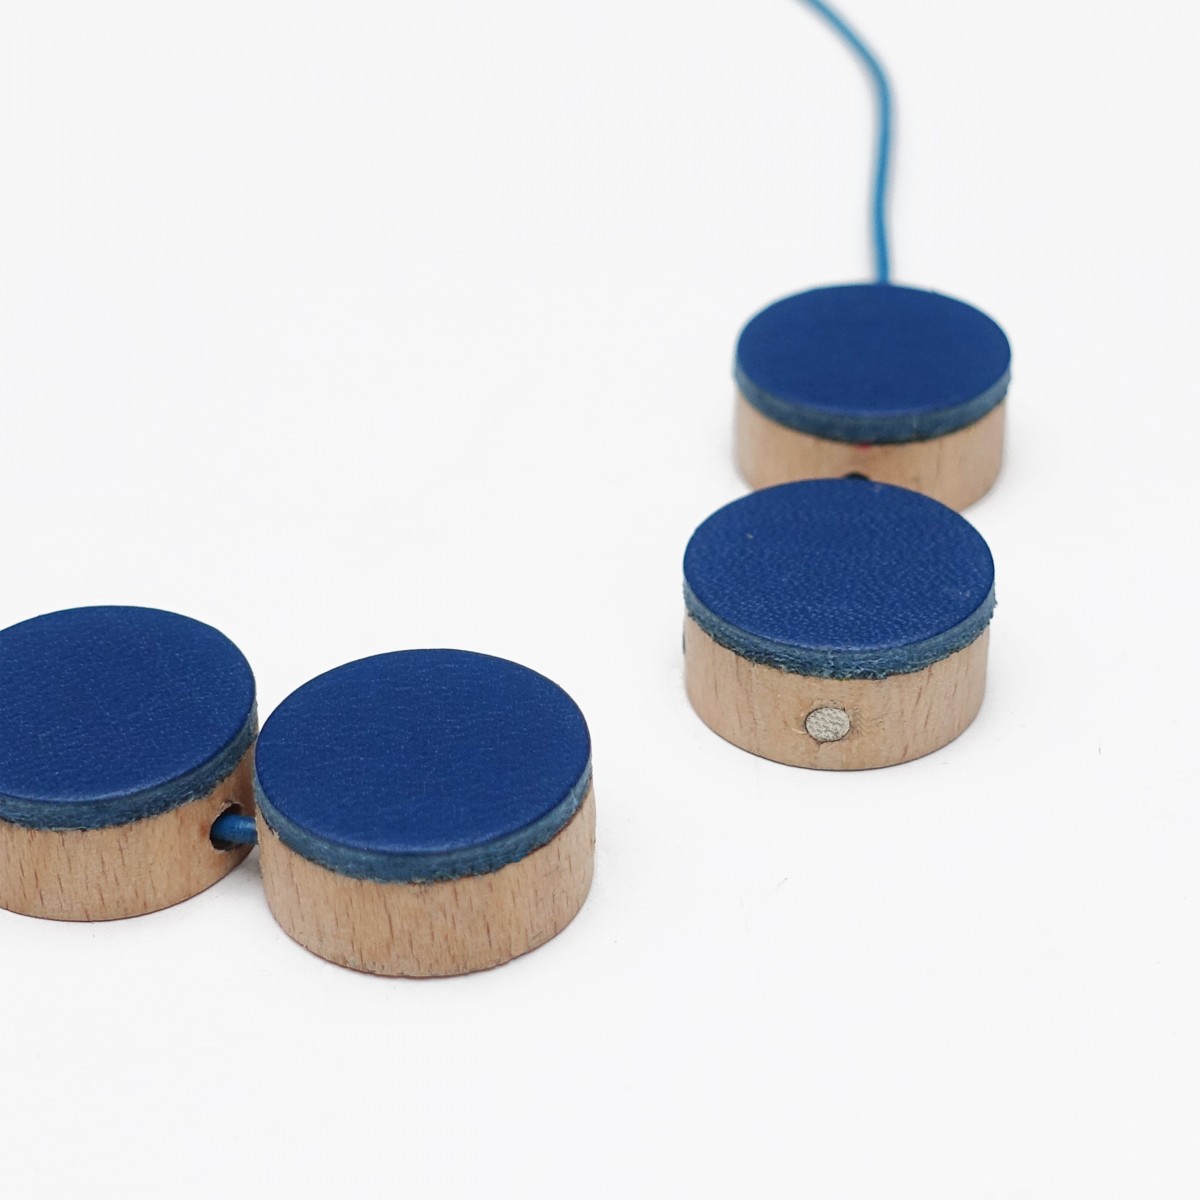 EINFACHDESIGN, magnetische Kette für verschiedene Kettenformationen, Leder auf Holz mit Lederband, blau